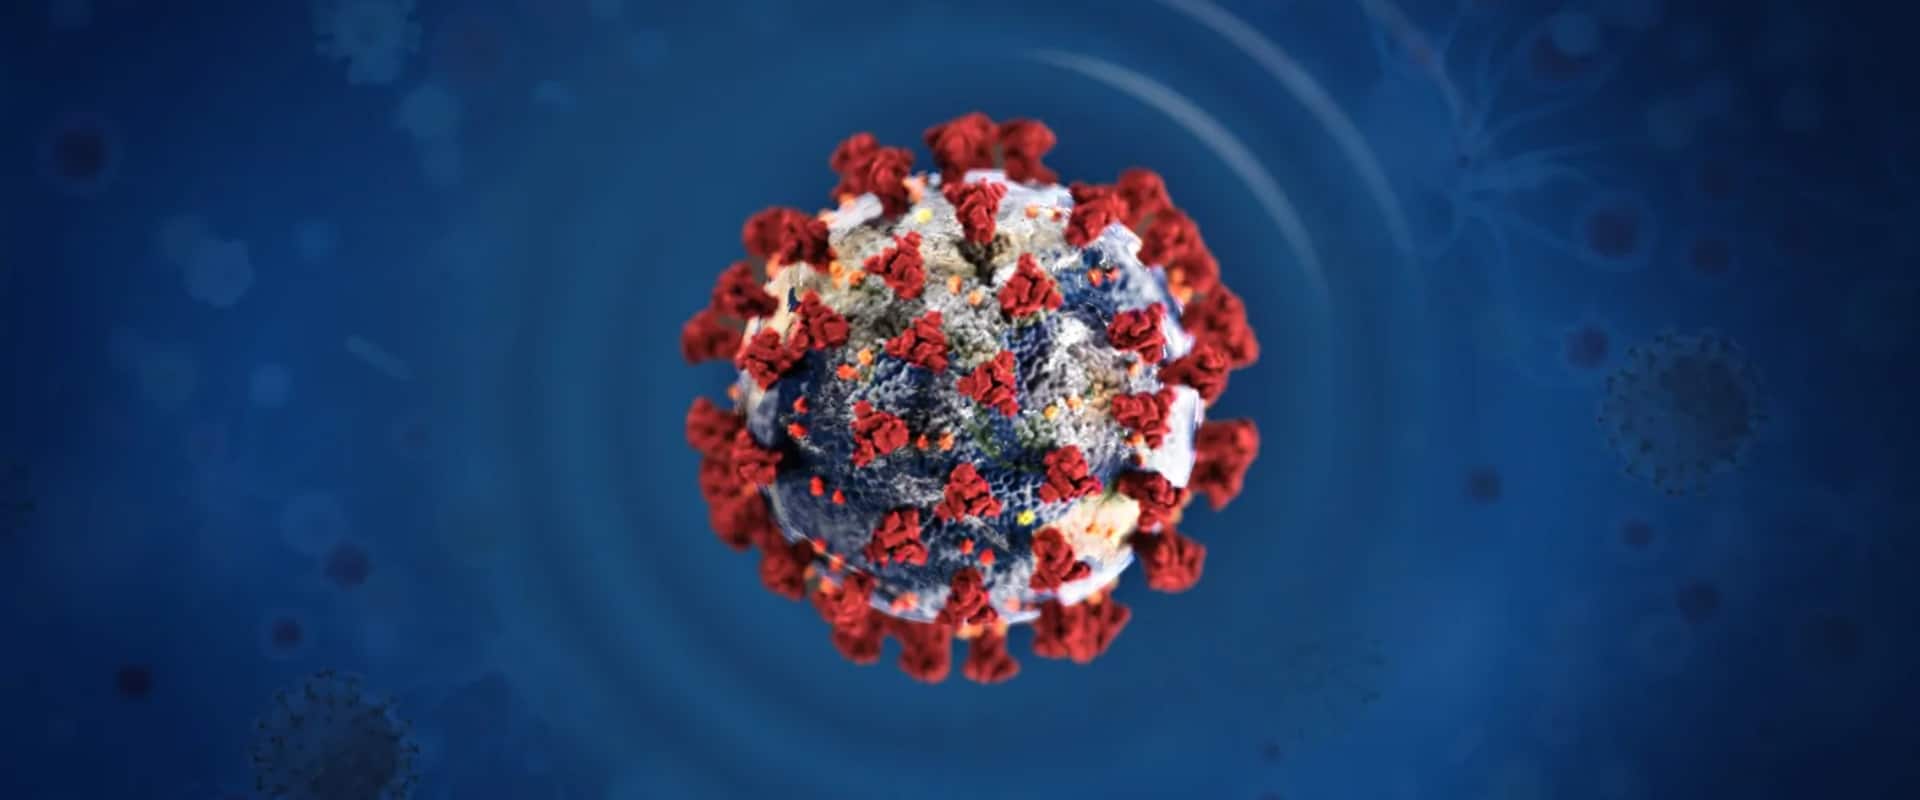 Tájékoztató az új koronavírus járványos terjedésének megelőzése érdekében